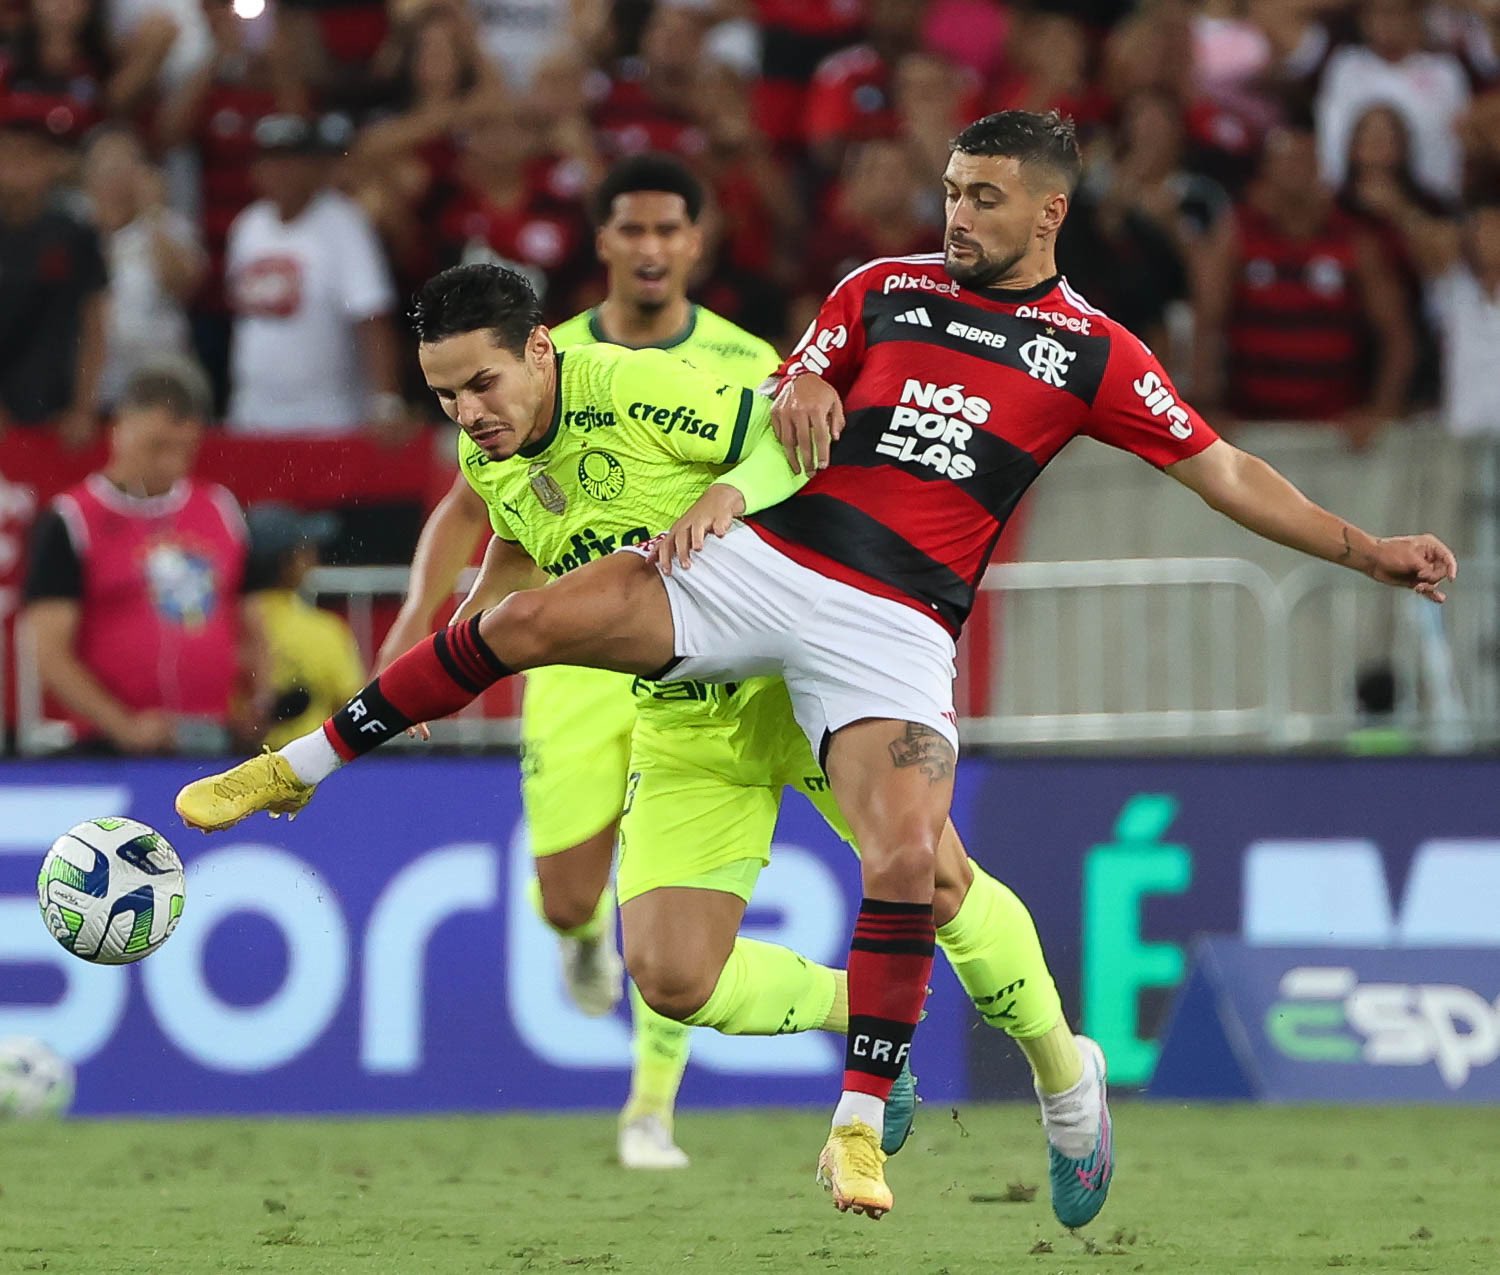 Resultado do jogo do Flamengo: Rubro-negro faz 3 a 0 e sonha com